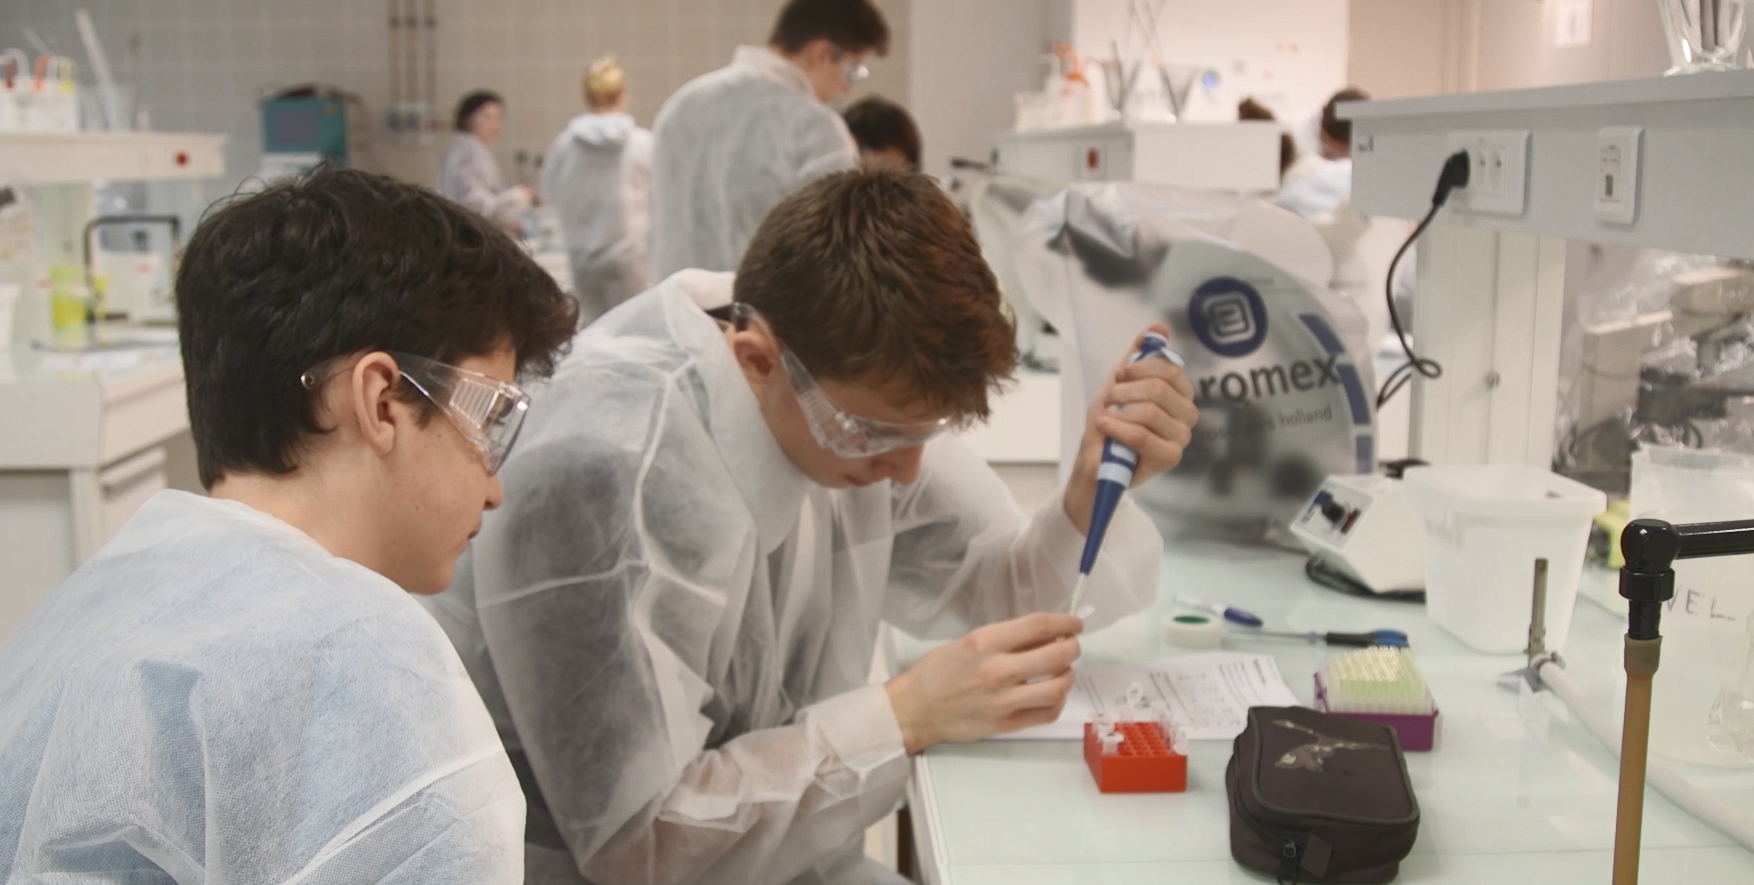 Étudiants réalisant des expériences dans un laboratoire scientifique